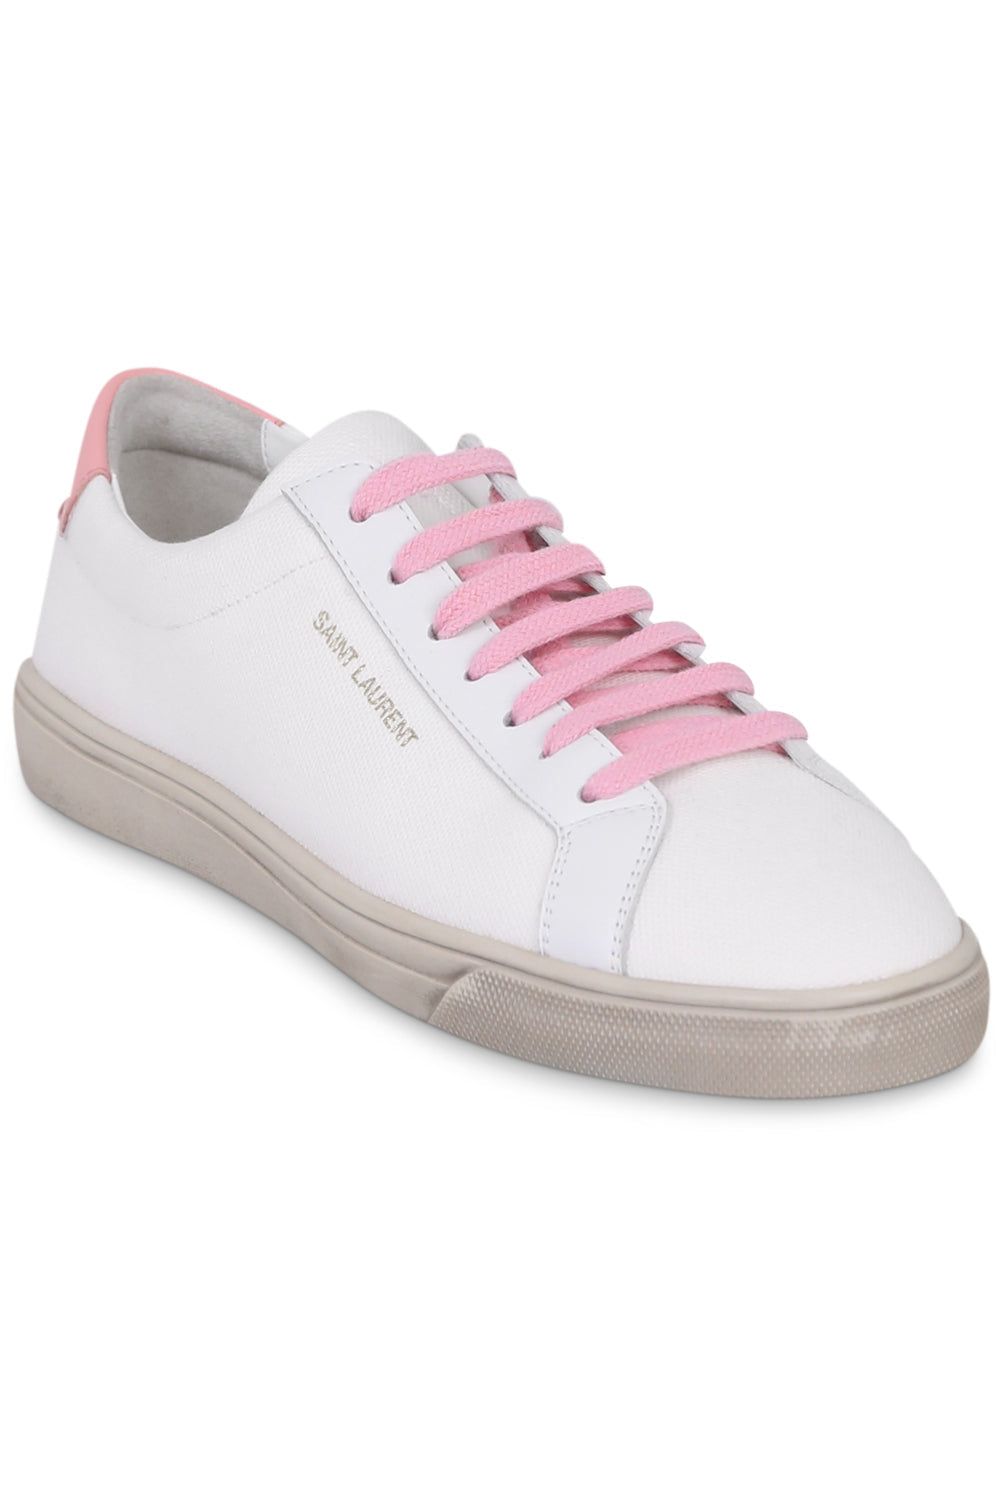 Saint Laurent | Shoes | Saint Laurent White Pink Court Classic Sl39 Sneakers  Womens Eu 36us 6 | Poshmark